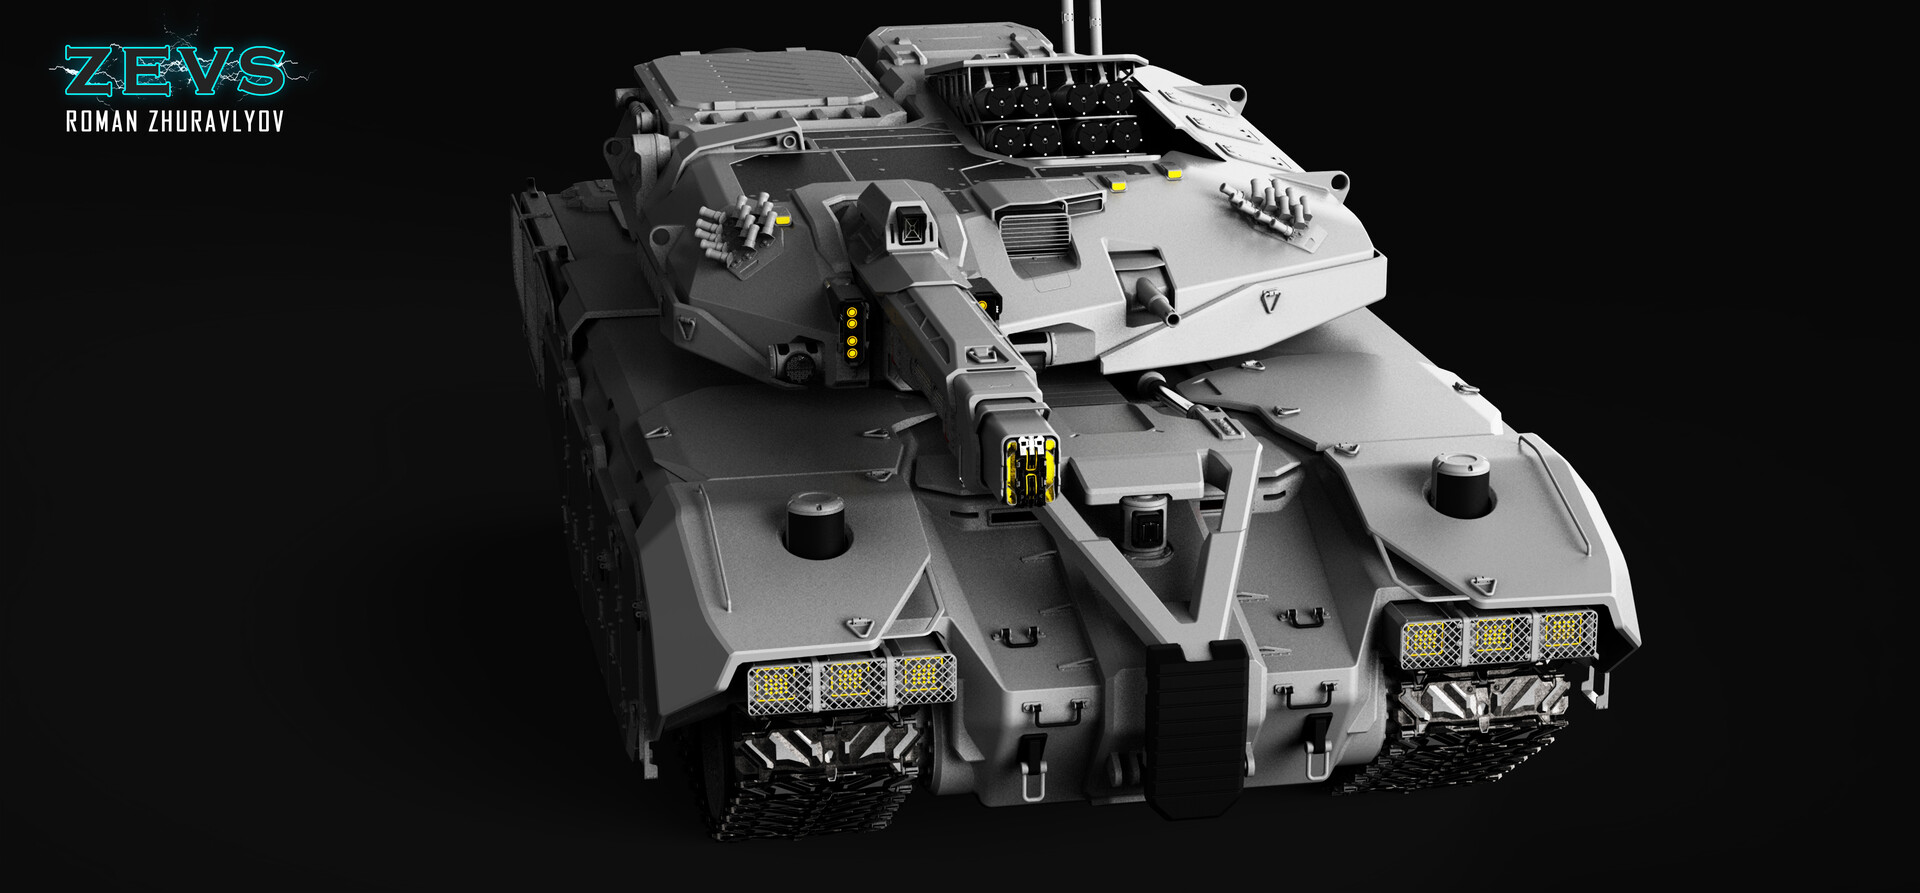 Tank 670. Танк концепт MBT. Т-269 Зевс танк. Т-270 Зевс танк. ARTSTATION танк.